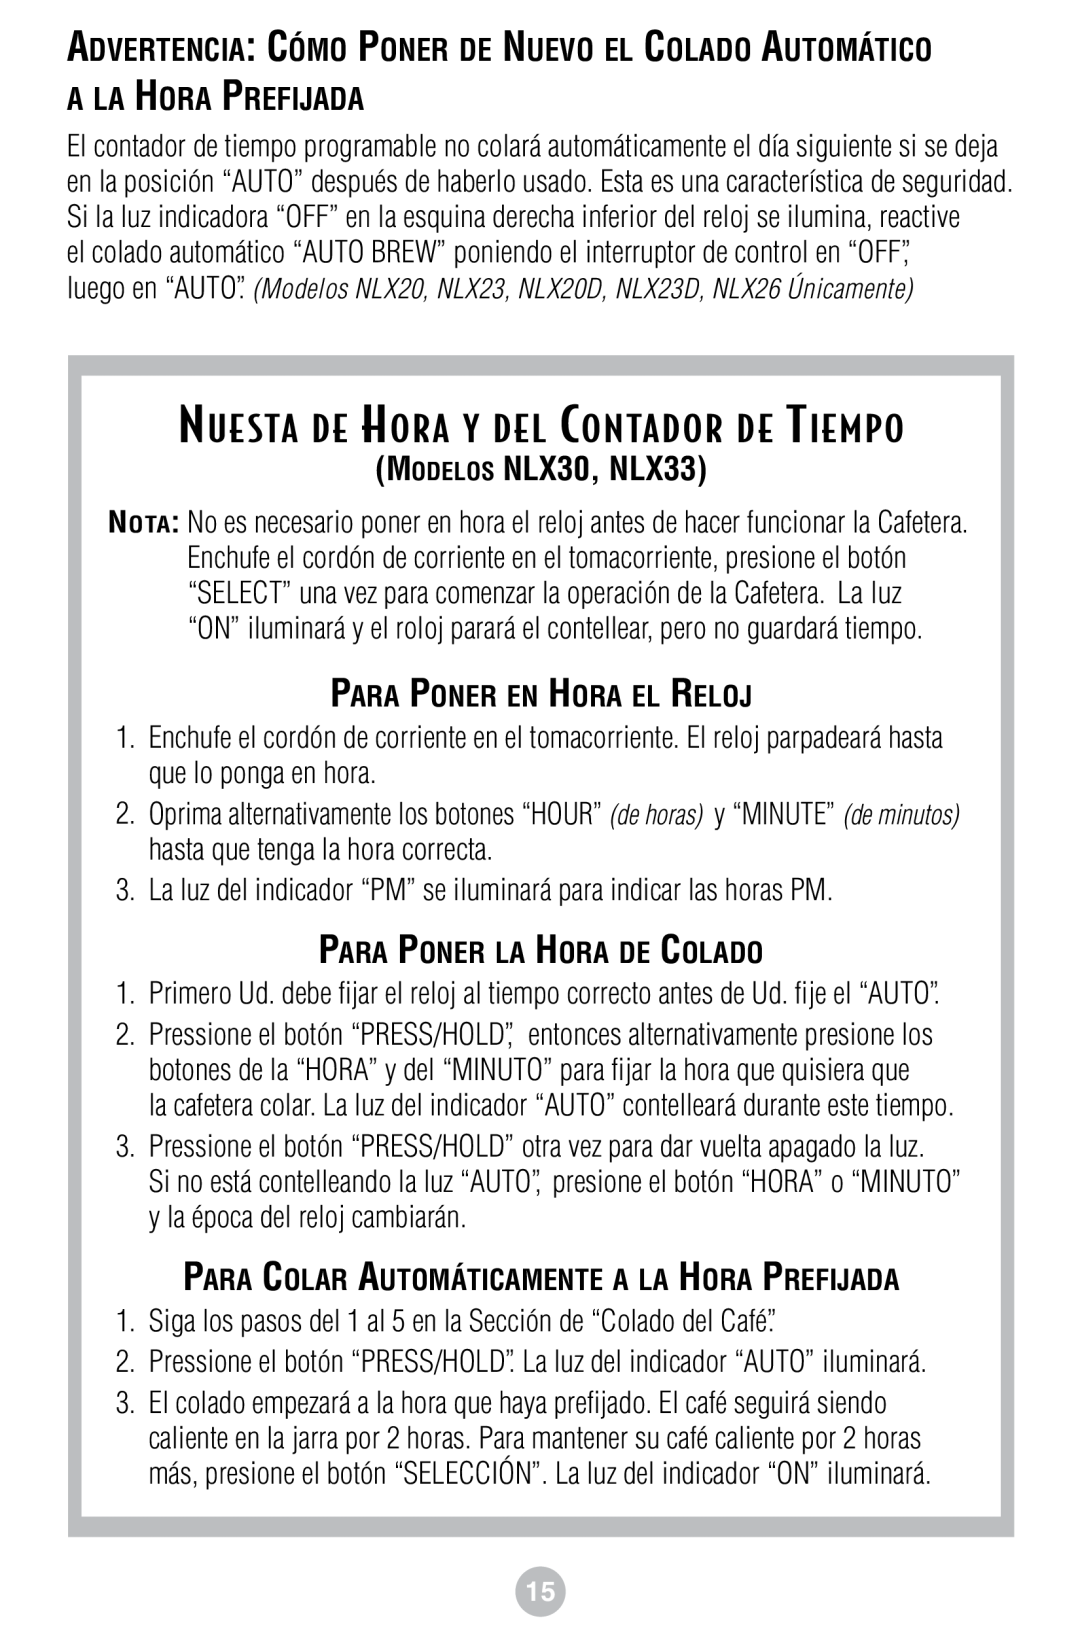 Mr. Coffee NLS12/White Nuesta De Hora Y Del Contador De Tiempo, MODELOS NLX30, NLX33, Para Poner En Hora El Reloj 